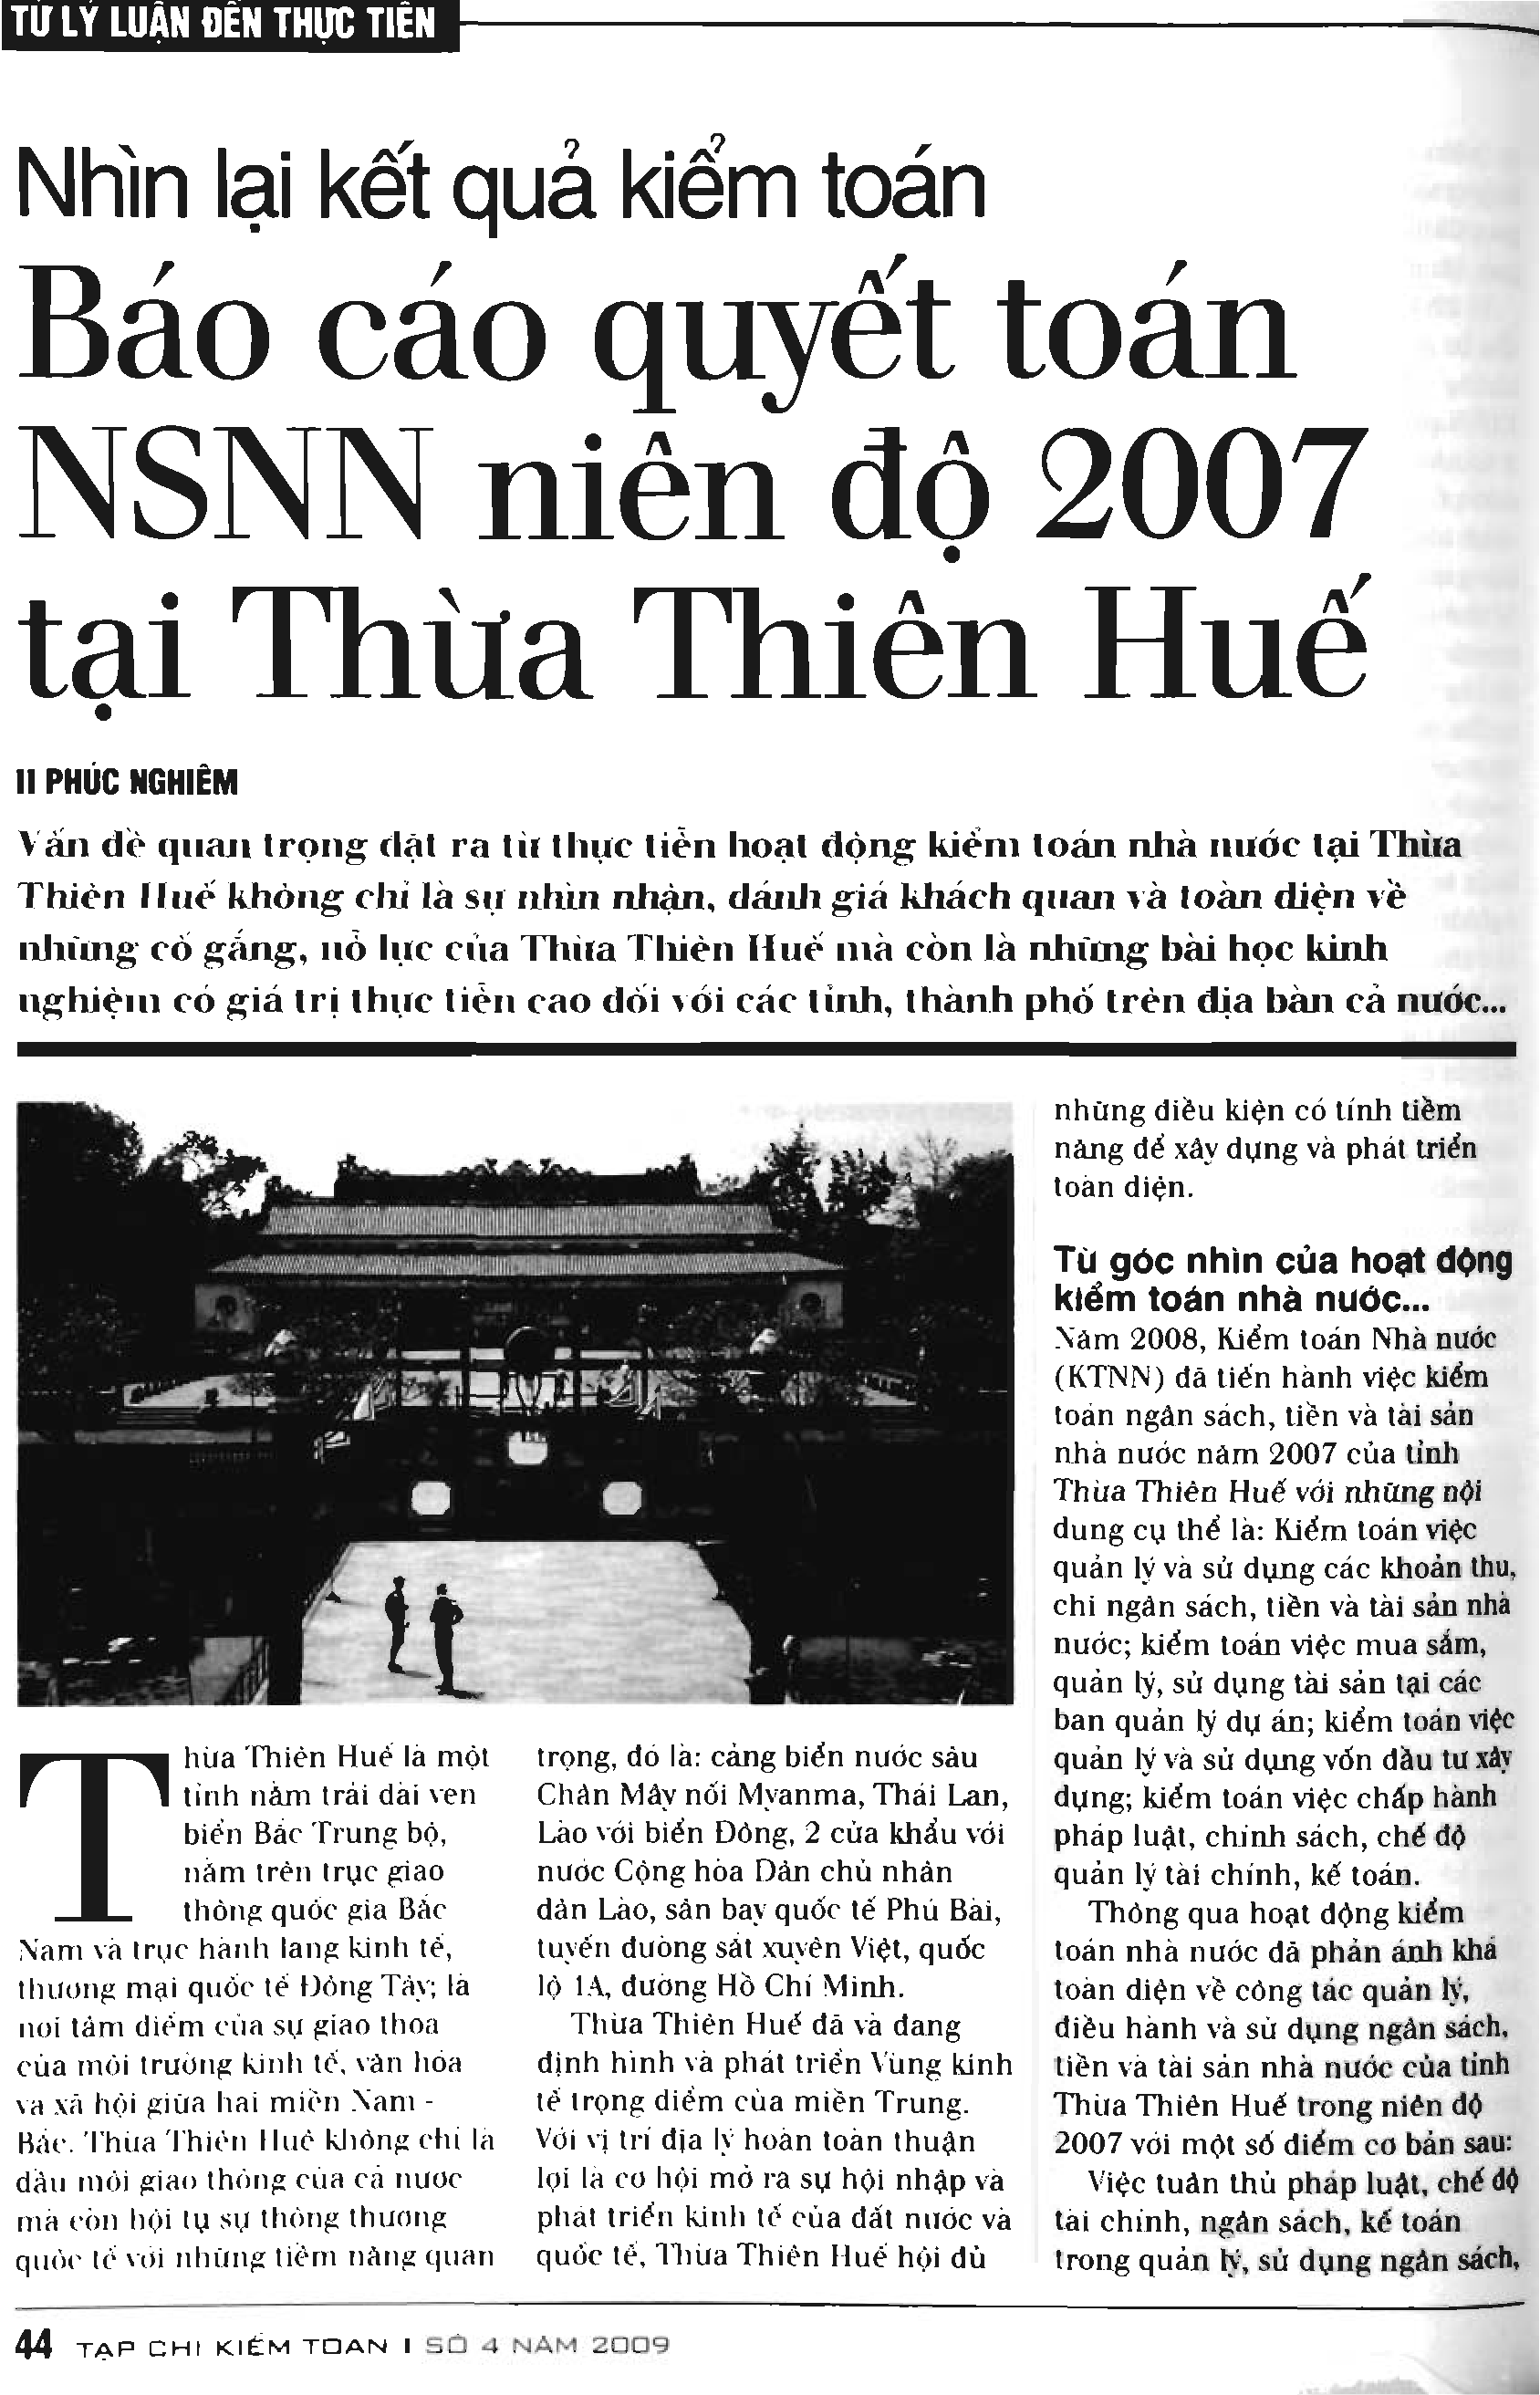 Nhìn lại kết quả kiểm toán báo cáo quyết toán ngân sách nhà nước niên độ 2007 tại Thừa Thiên Huế